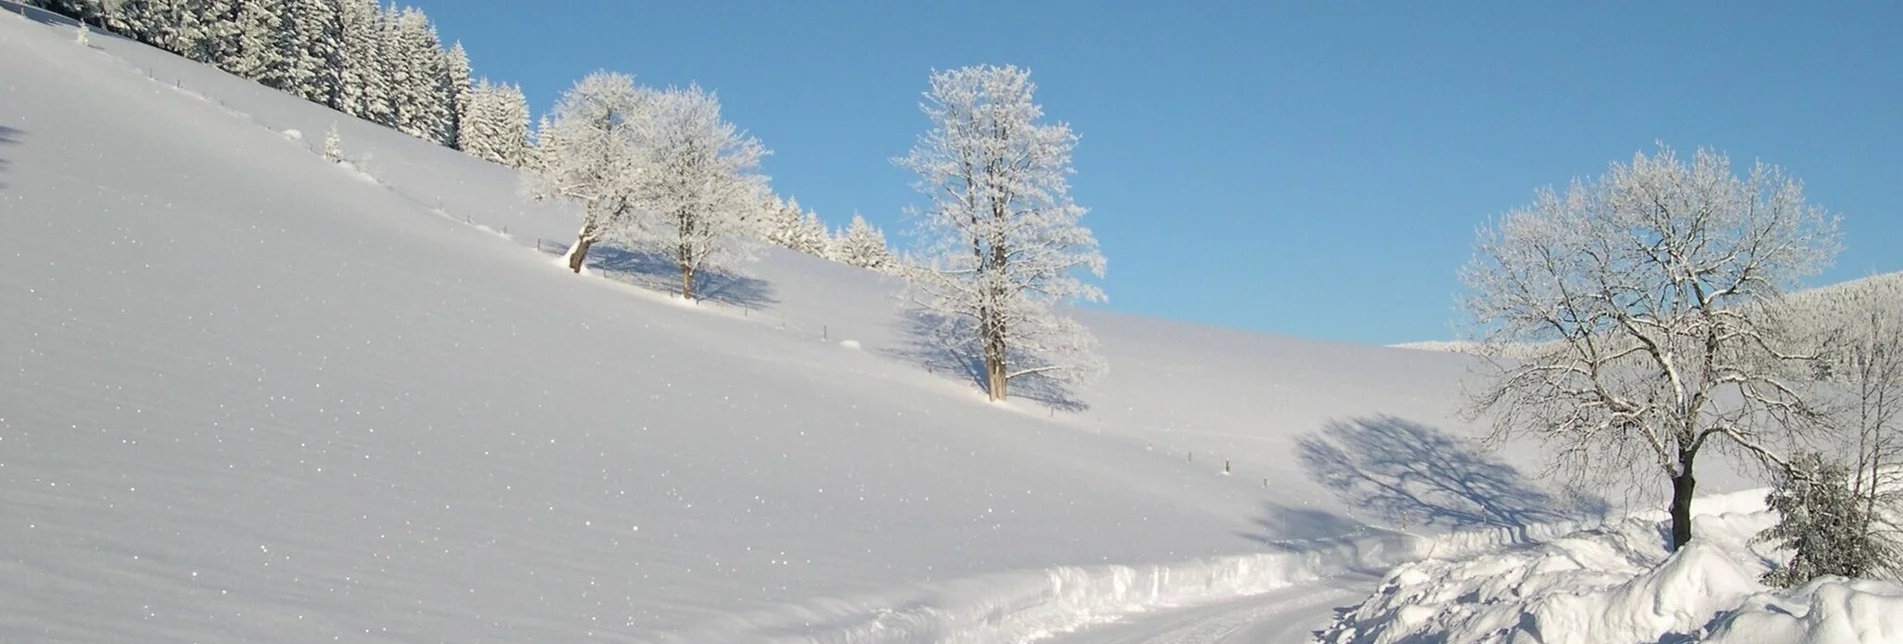 Winterwandern Winterwanderweg vom Feistritztal nach Falkenstein - Touren-Impression #1 | © Oststeiermark Tourismus